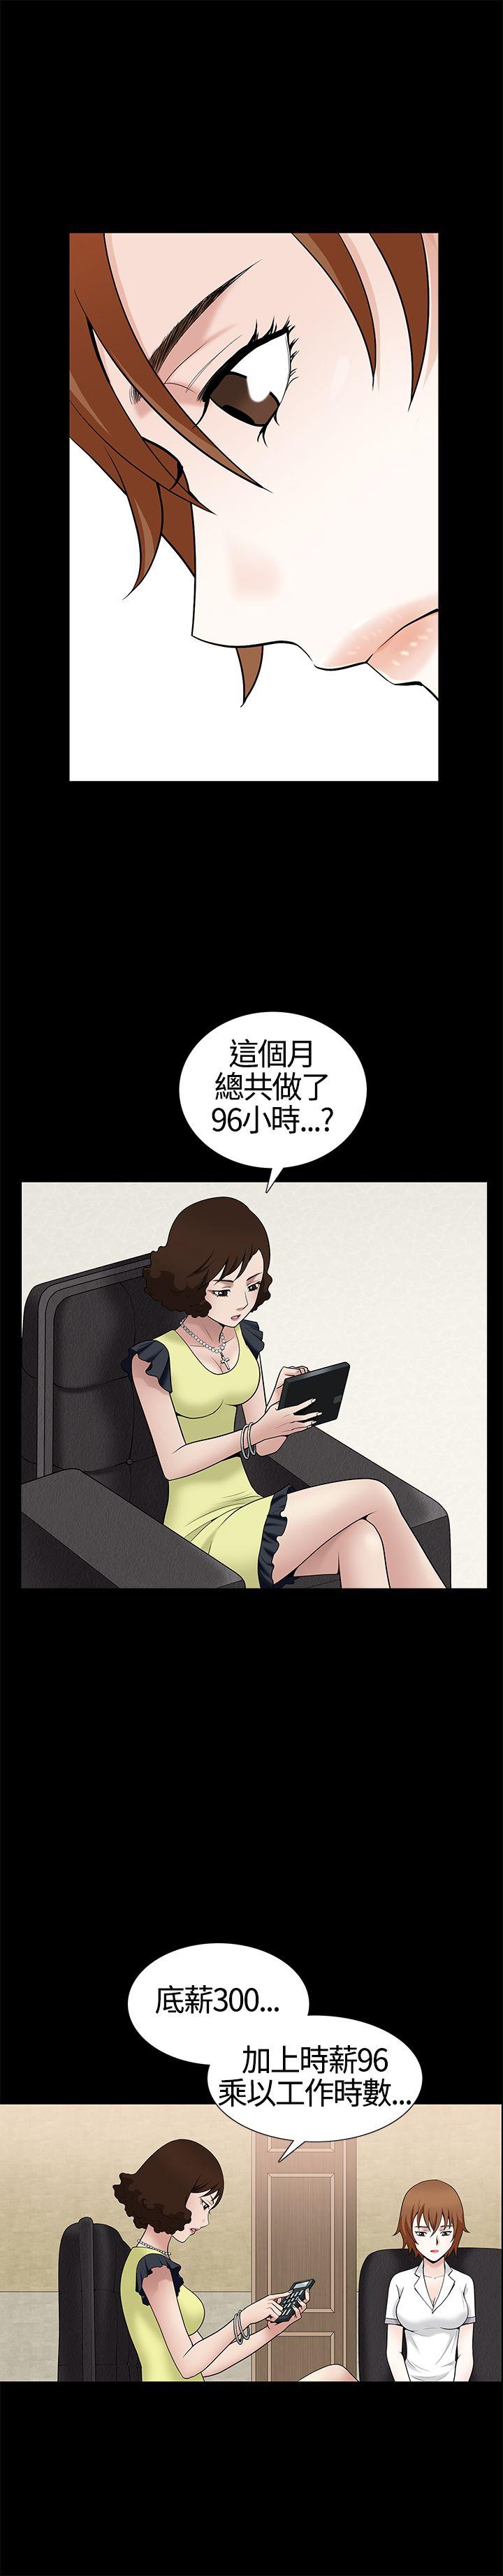 韩国污漫画 人妻性解放3:粗糙的手 第10话 4